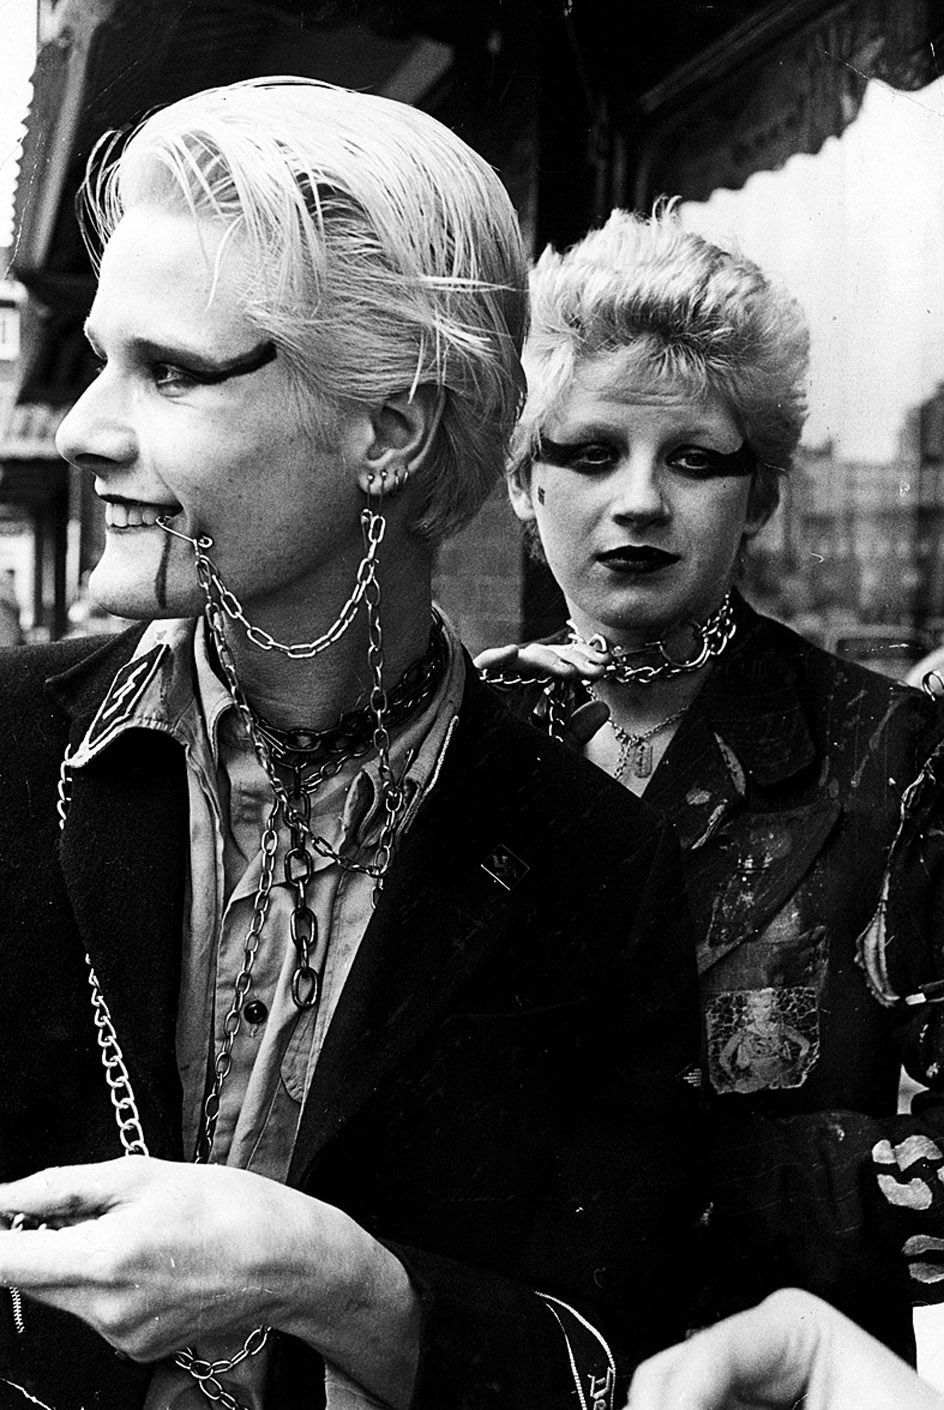 Twee punkers eind jaren zeventig: no future! Foto Alex Levac